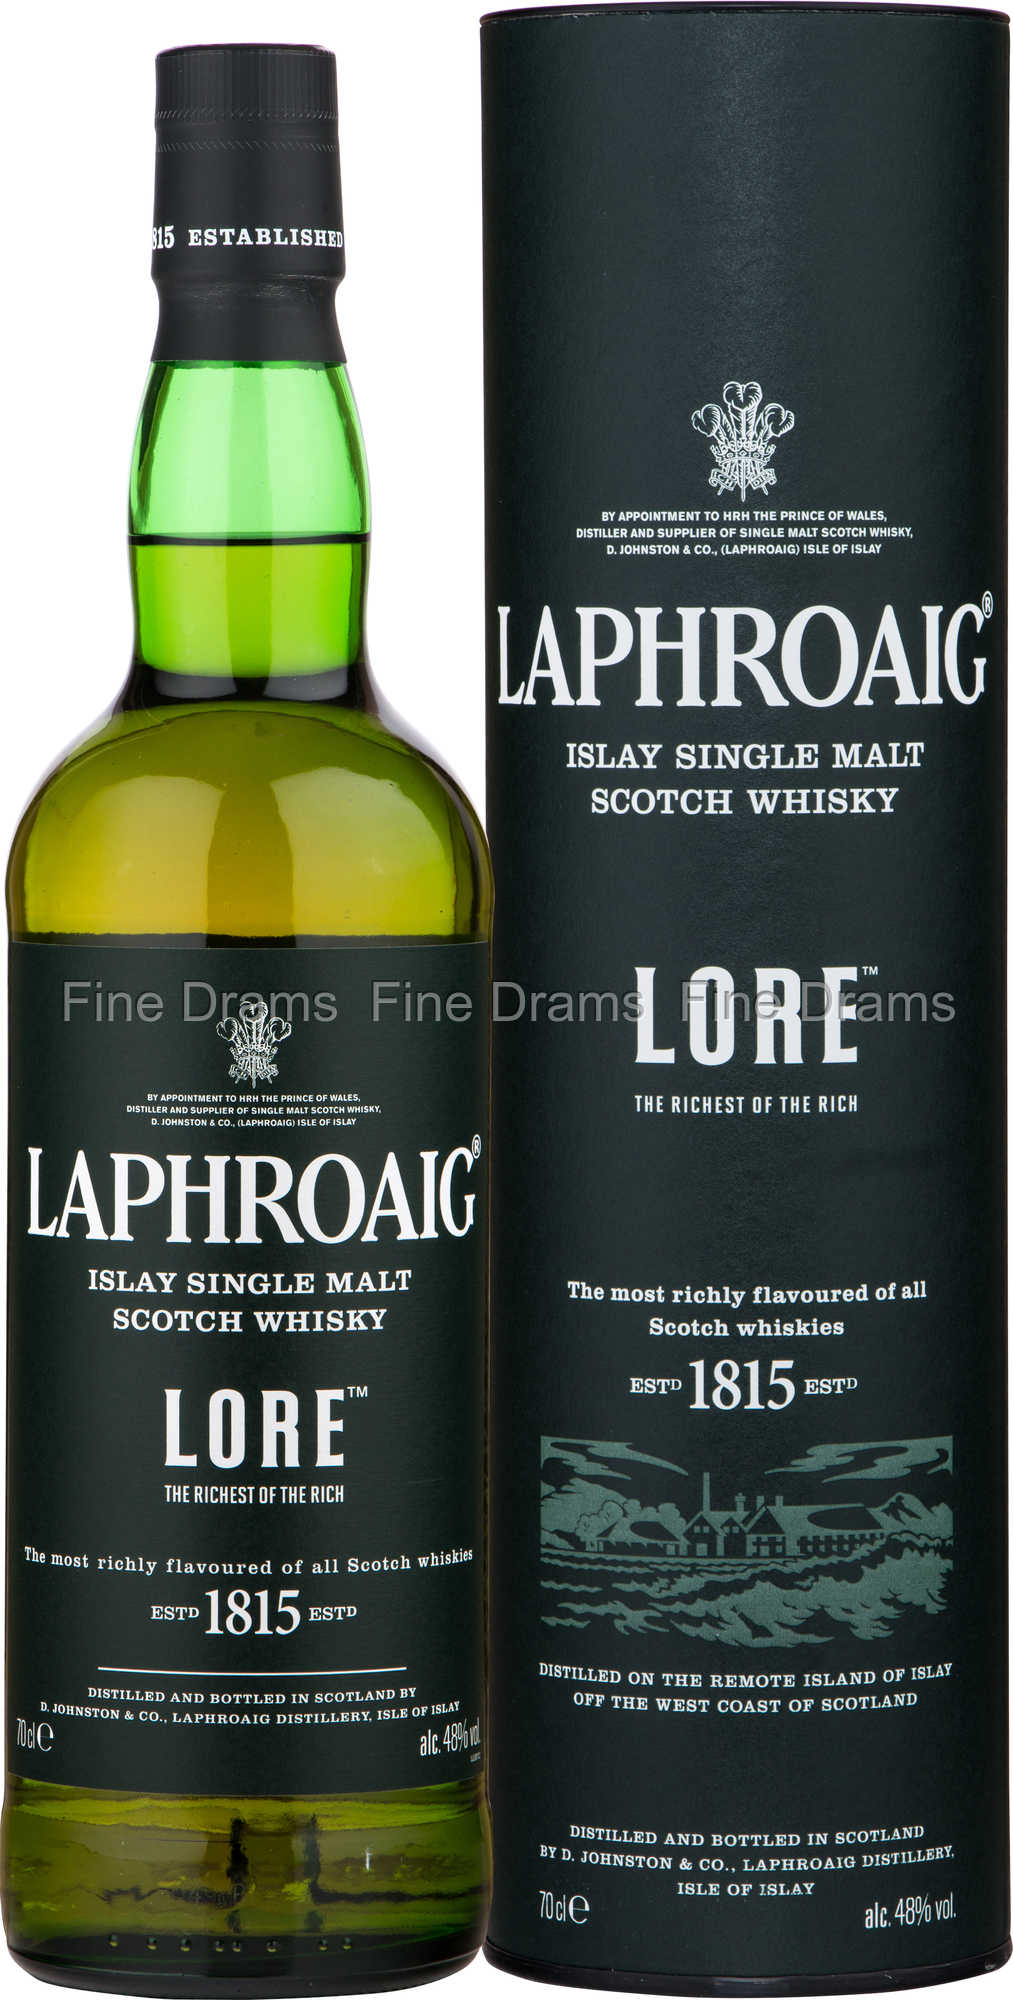 Laphroaig - The 1815 70 cl 48% vol